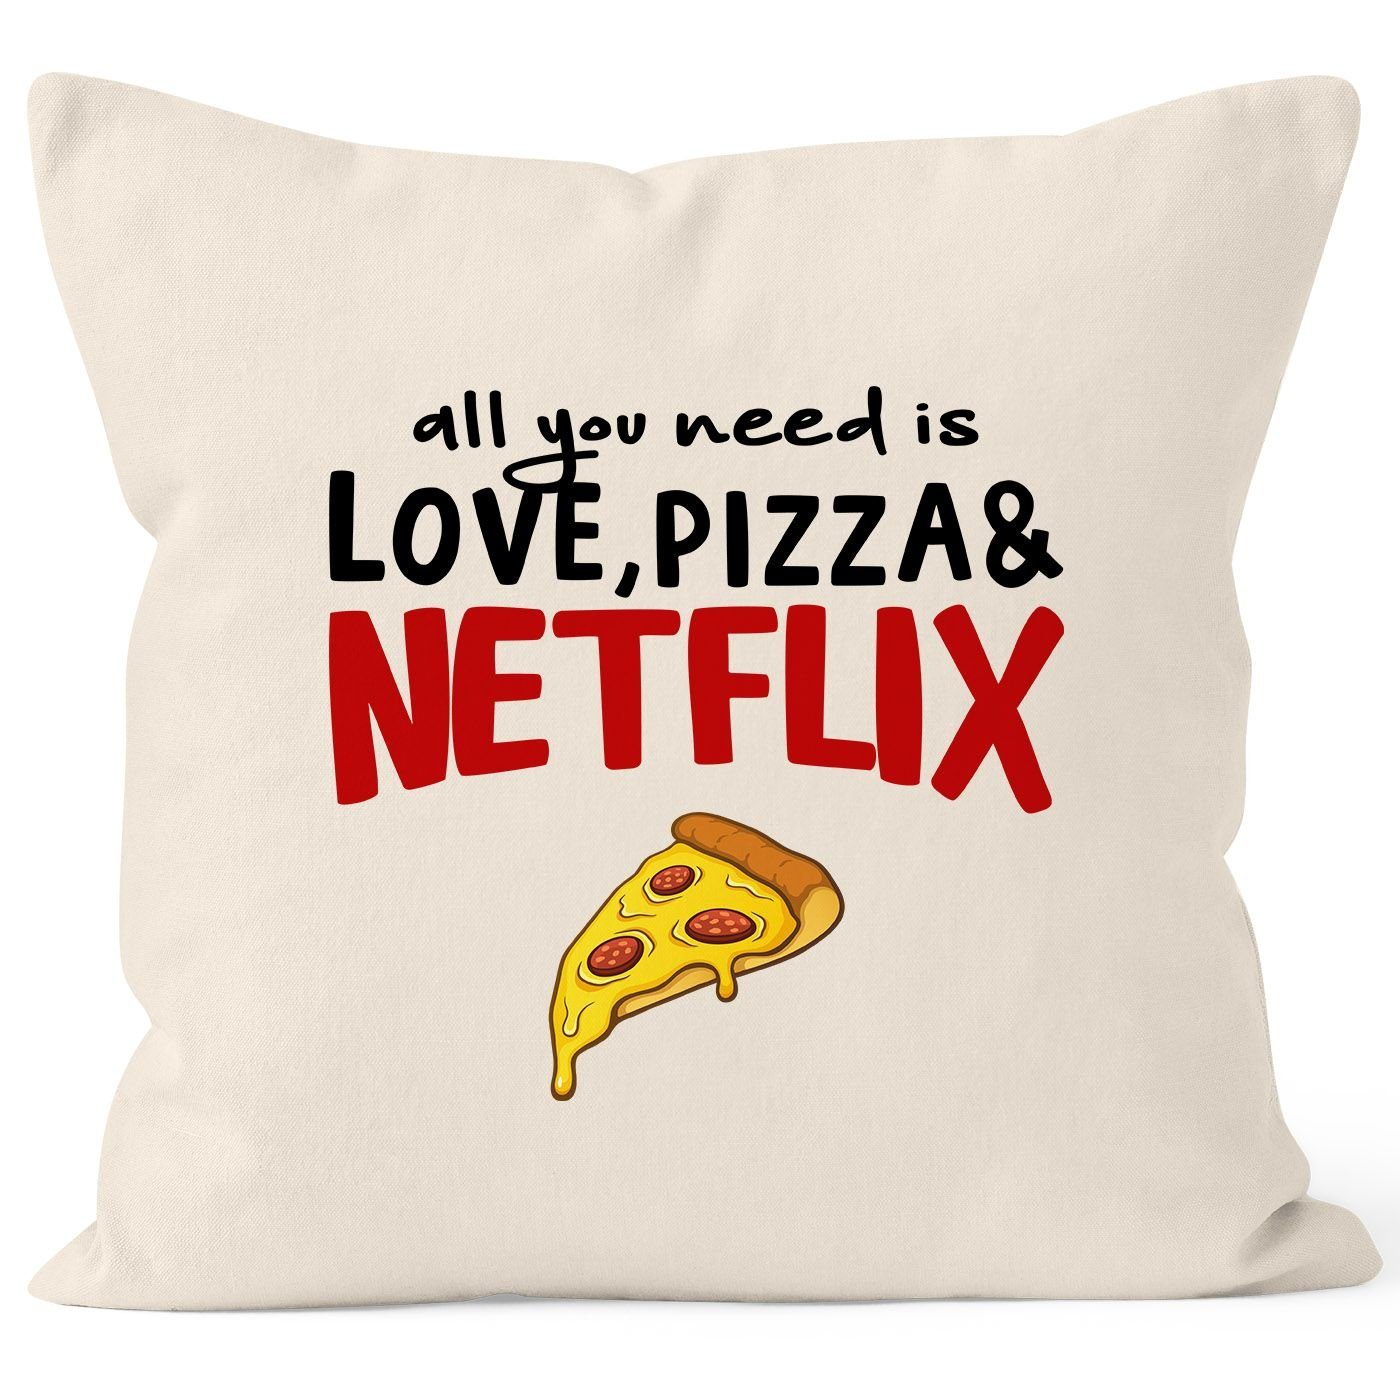 Kissen-Hülle need and you MoonWorks® love, Dekokissen Netflix Kissen-Bezug MoonWorks natur pizza all Baumwolle is Deko-Kissen